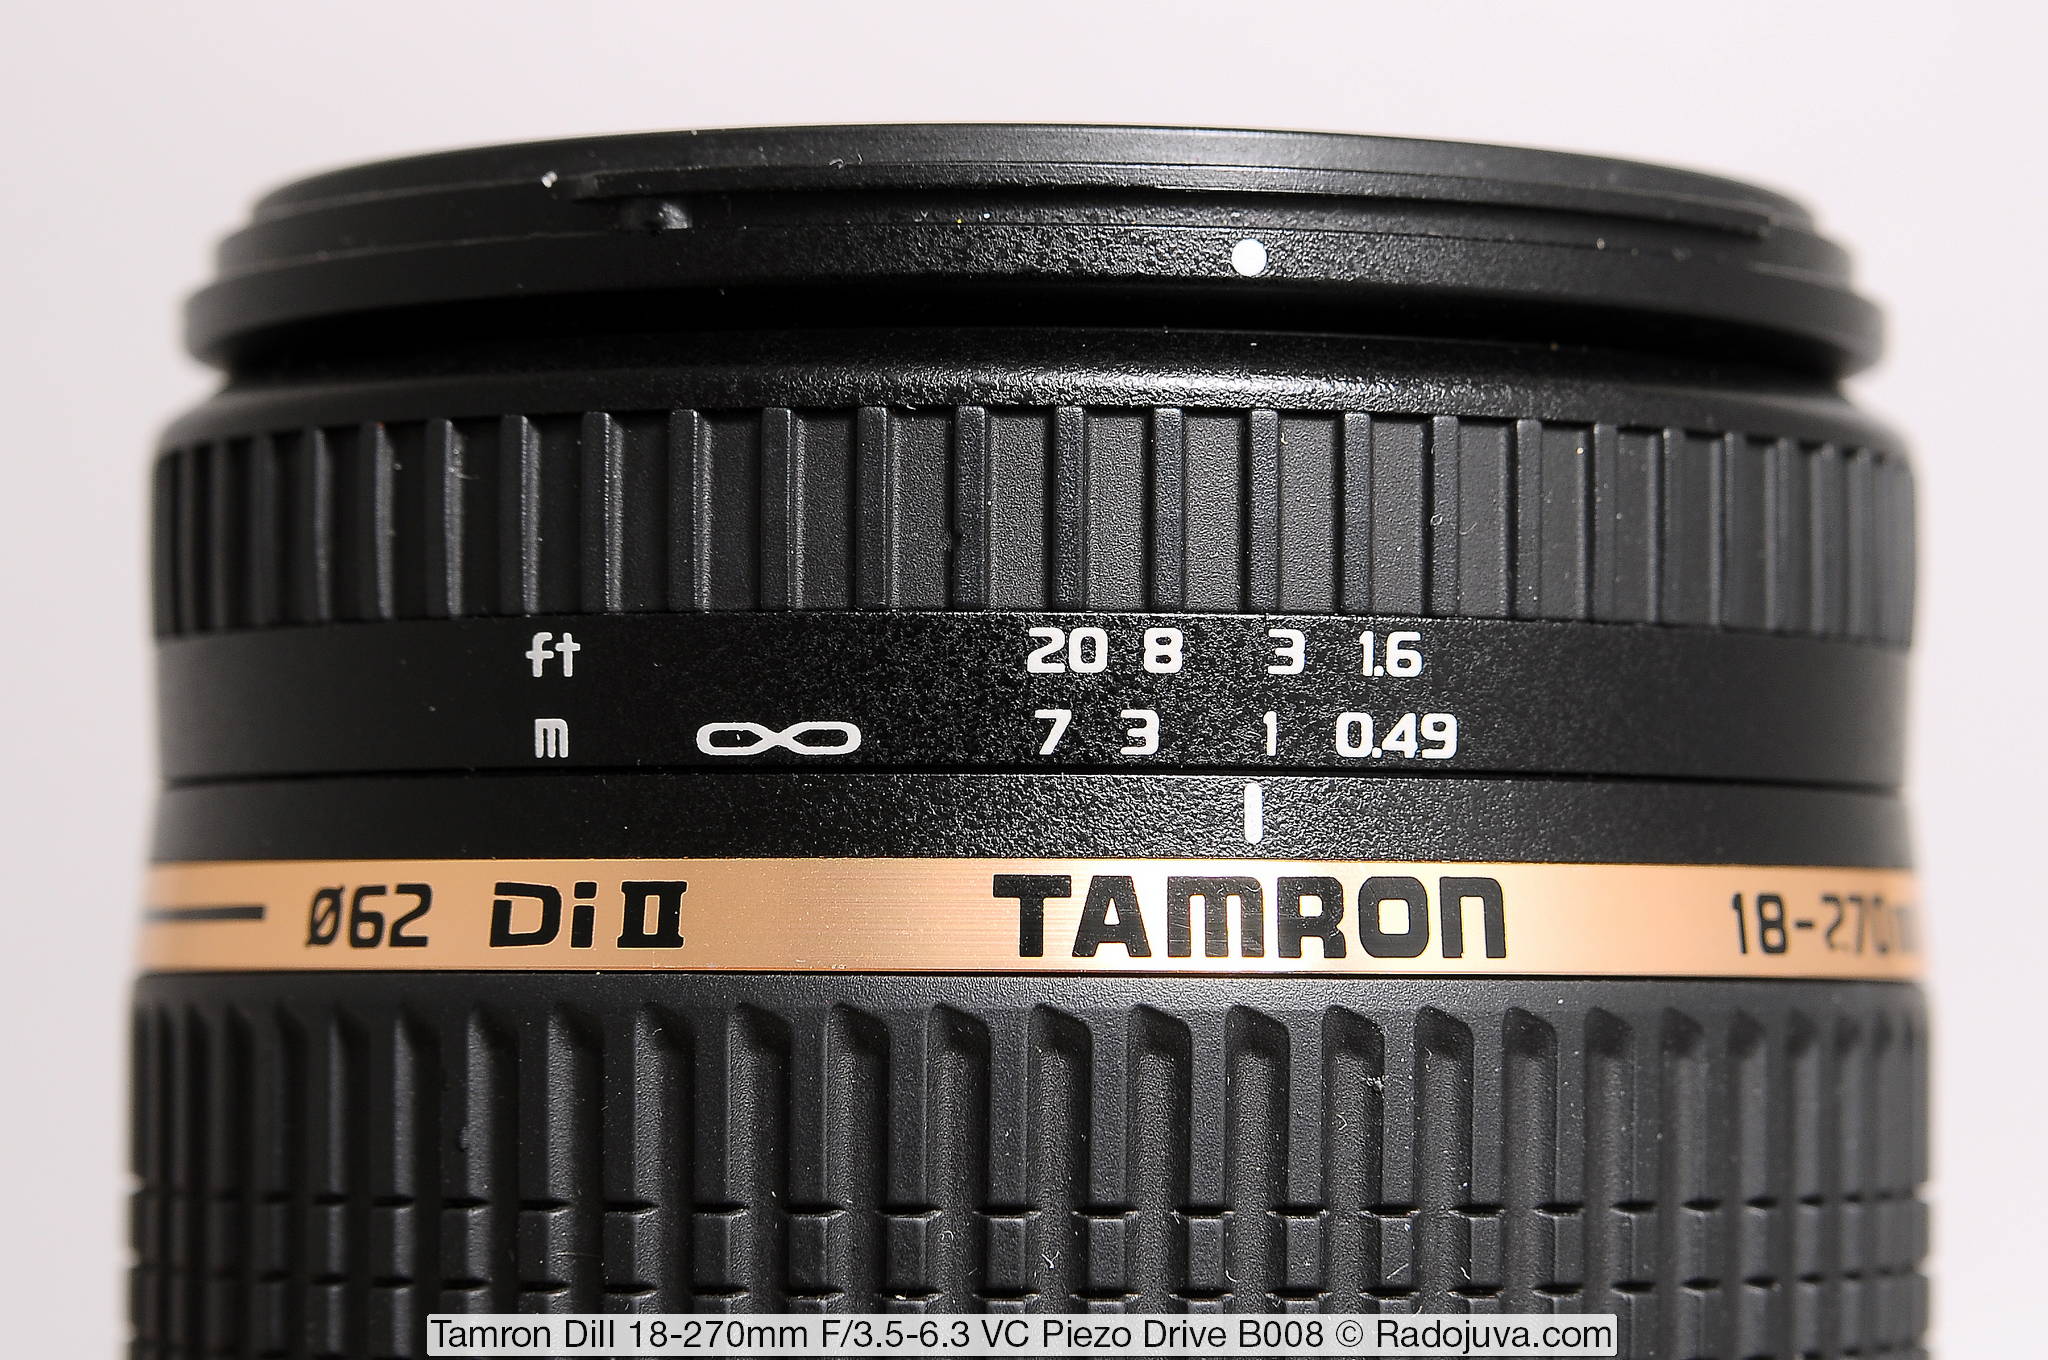 Tamron Di II 18-270mm F/3.5-6.3 VC Piezo Drive B008